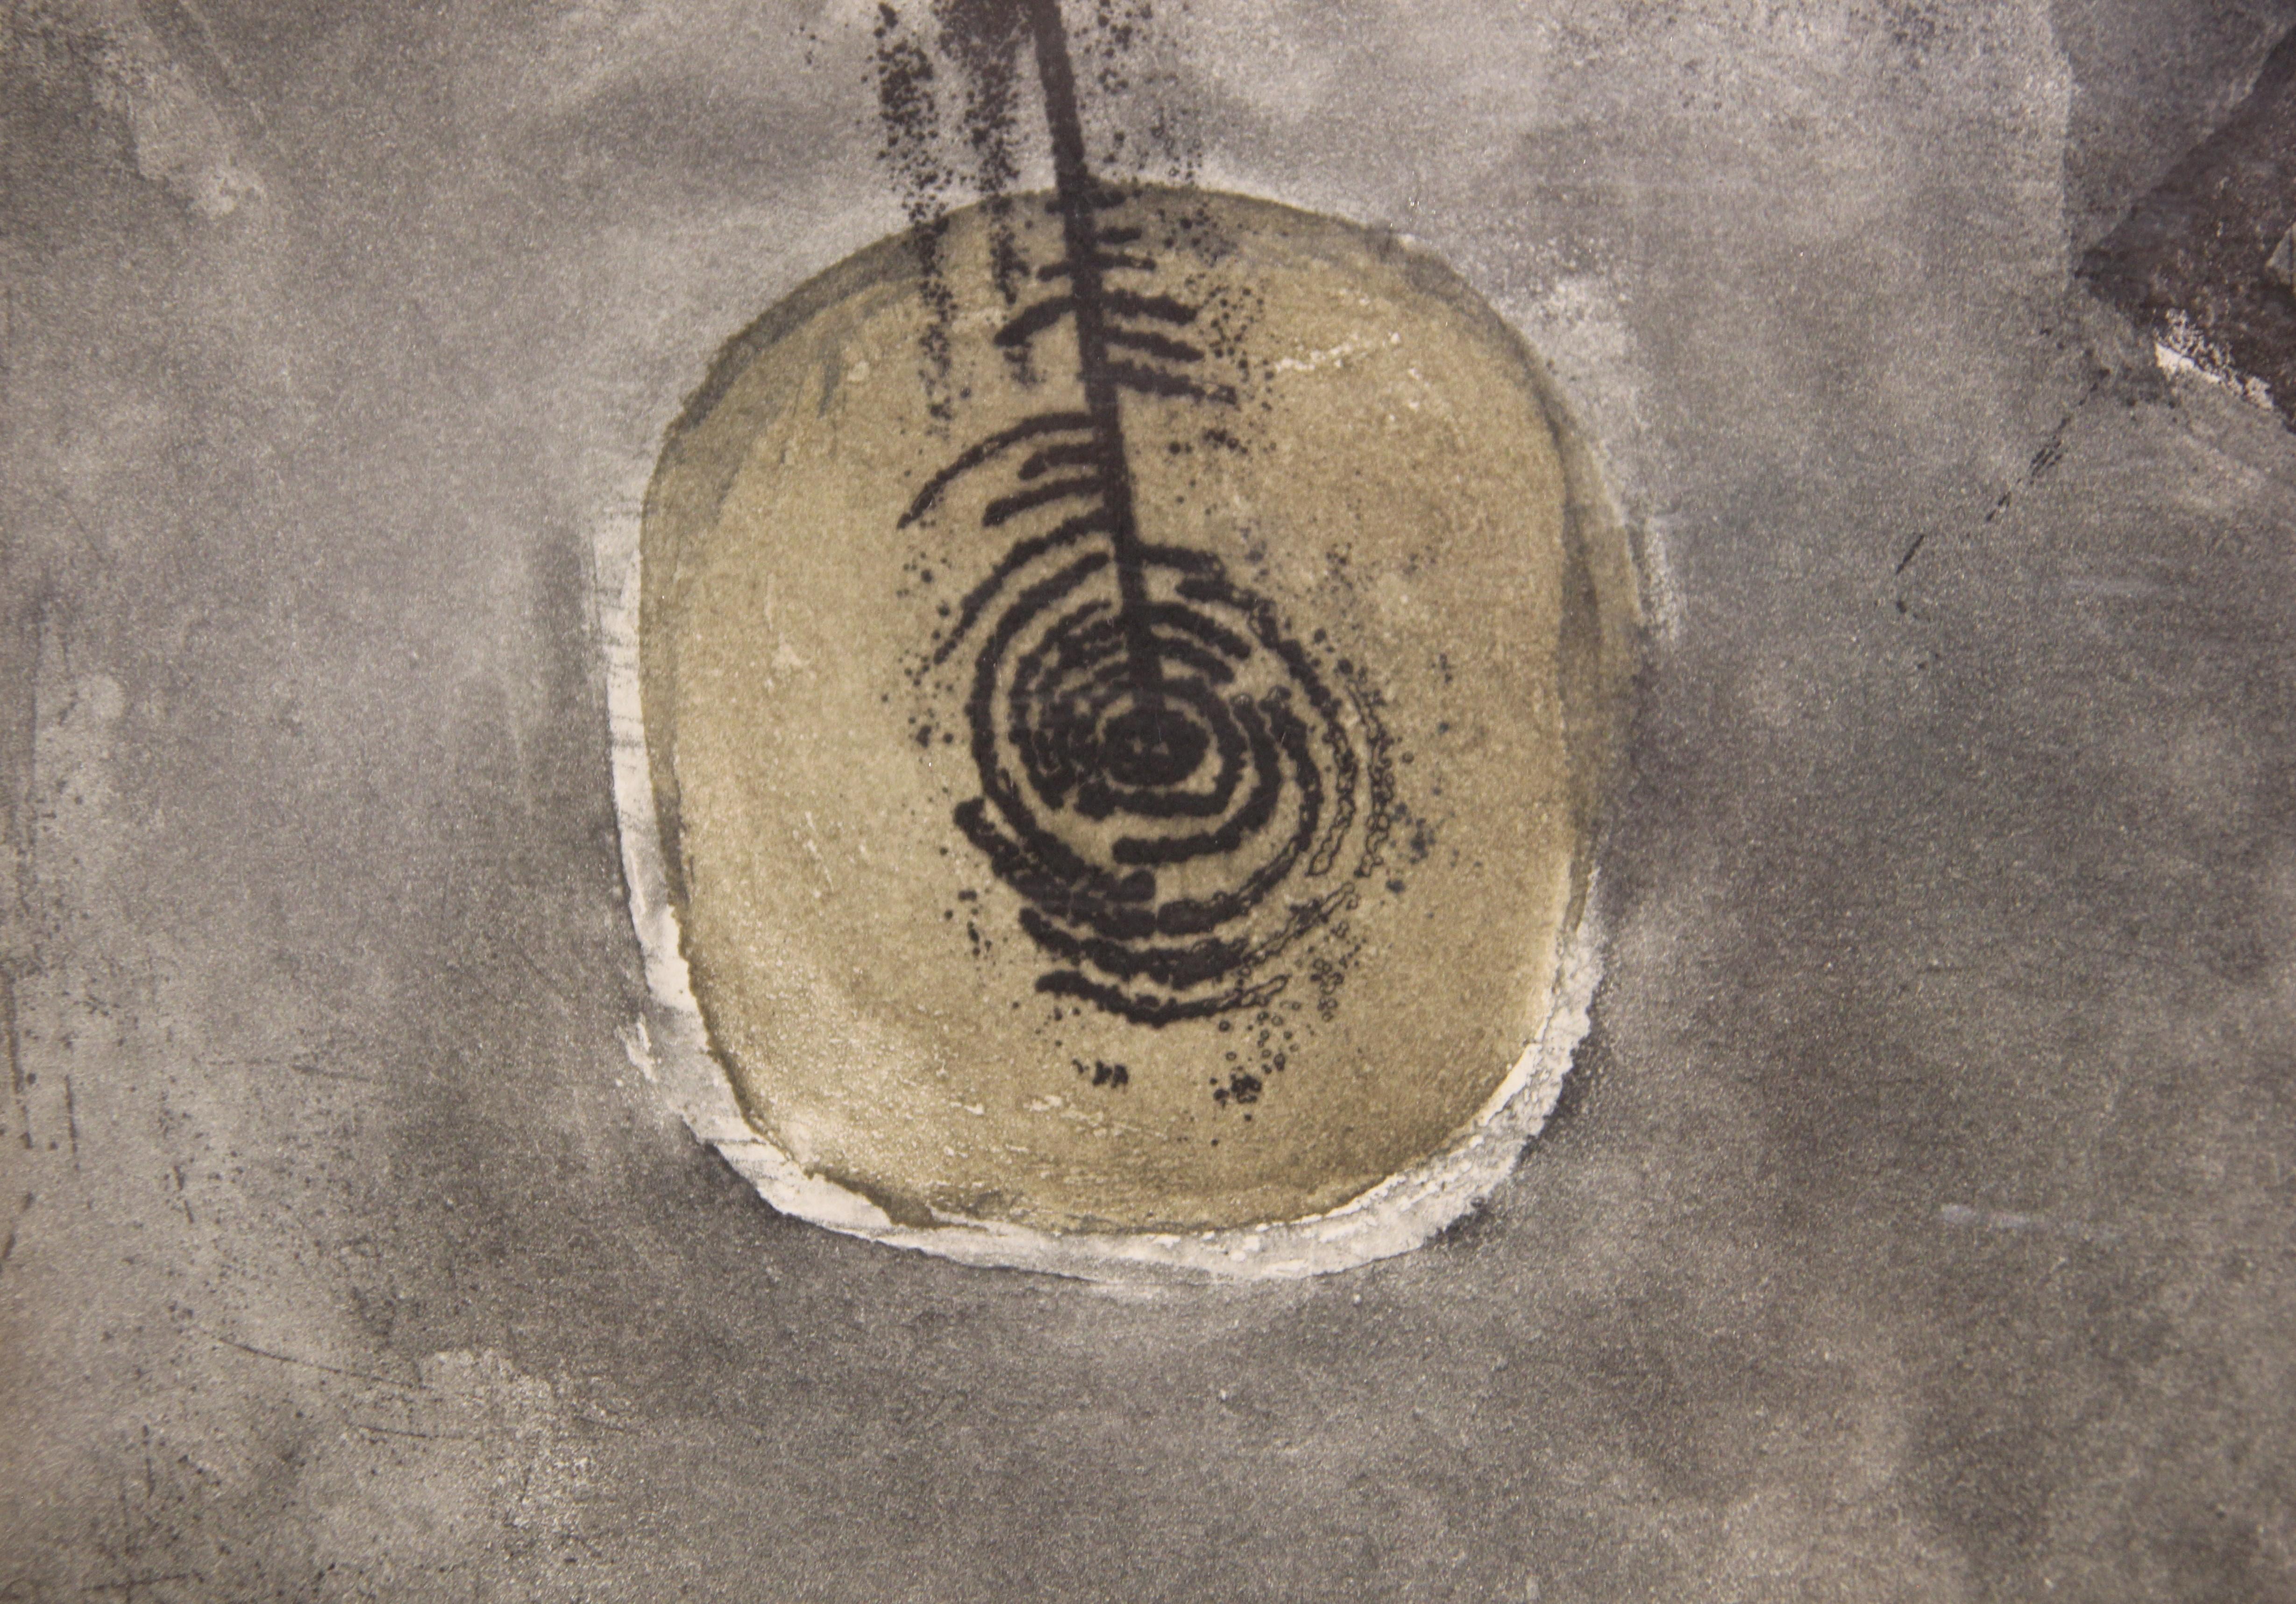 Lithographie abstraite moderne aux tons gris de l'artiste bolivienne Graciela Rodo Boulanger. L'œuvre met en scène deux enfants dans une charrette tirée par un cheval sur un fond gris sourd. Signé et édité par l'artiste dans la marge inférieure du